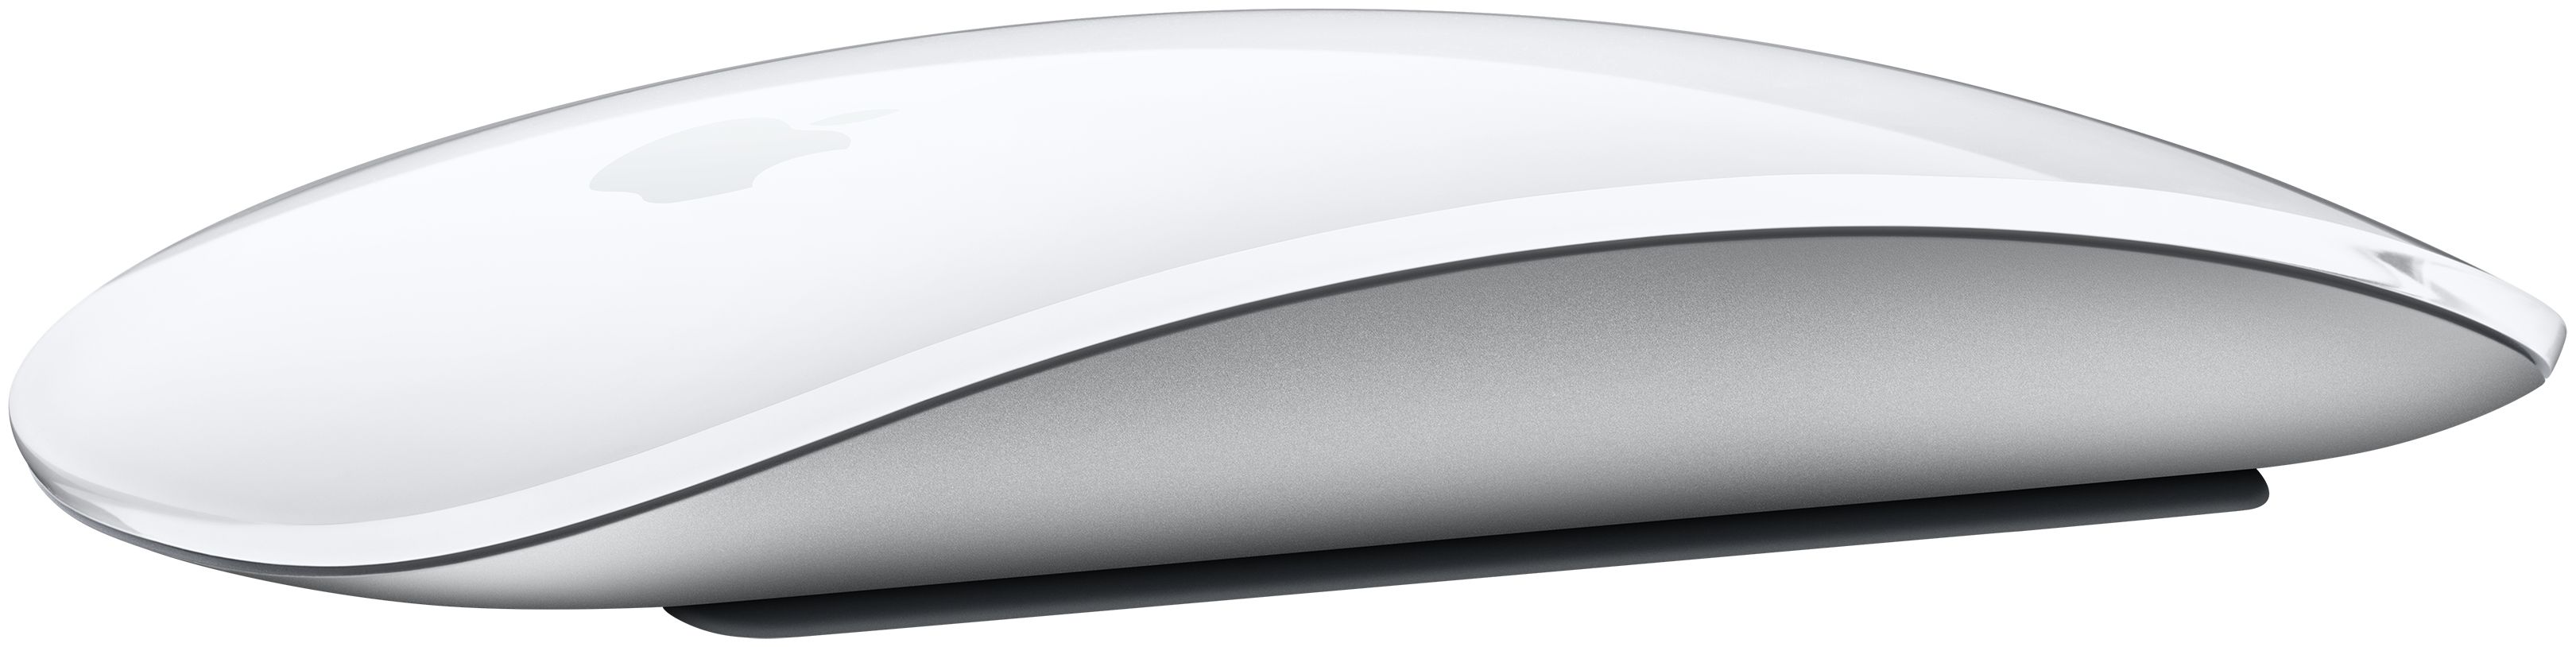 Apple Magic Mouse Büro Technomarkt von (Weiß) Maus expert